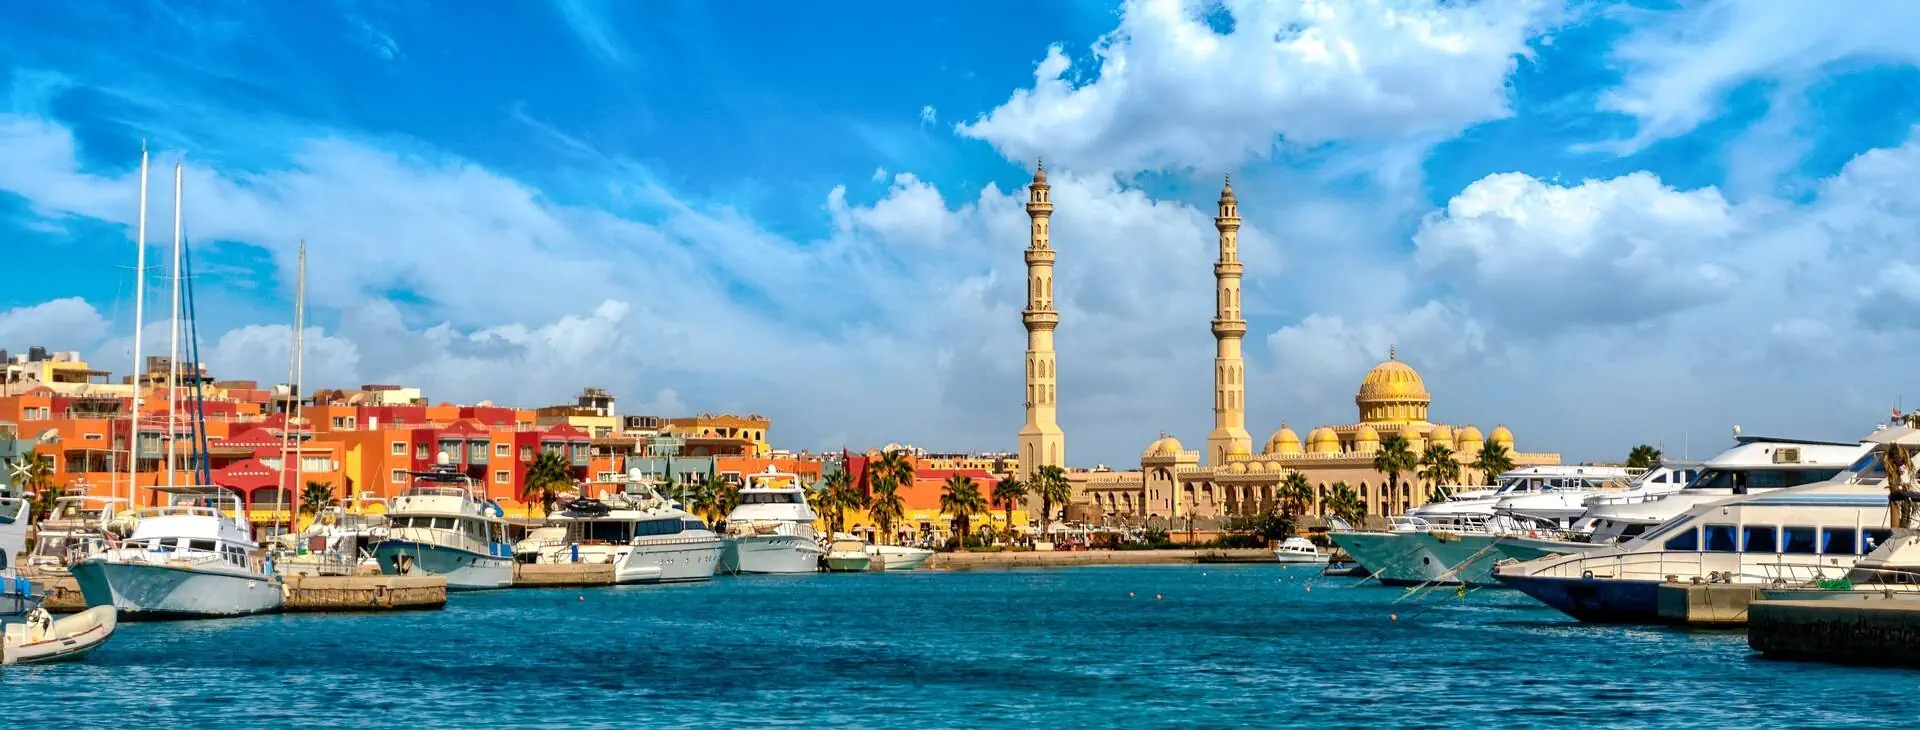 Egipt Wyc. objazdowe Wyc. objazdowe Egipt - Hurghada Holiday Tour